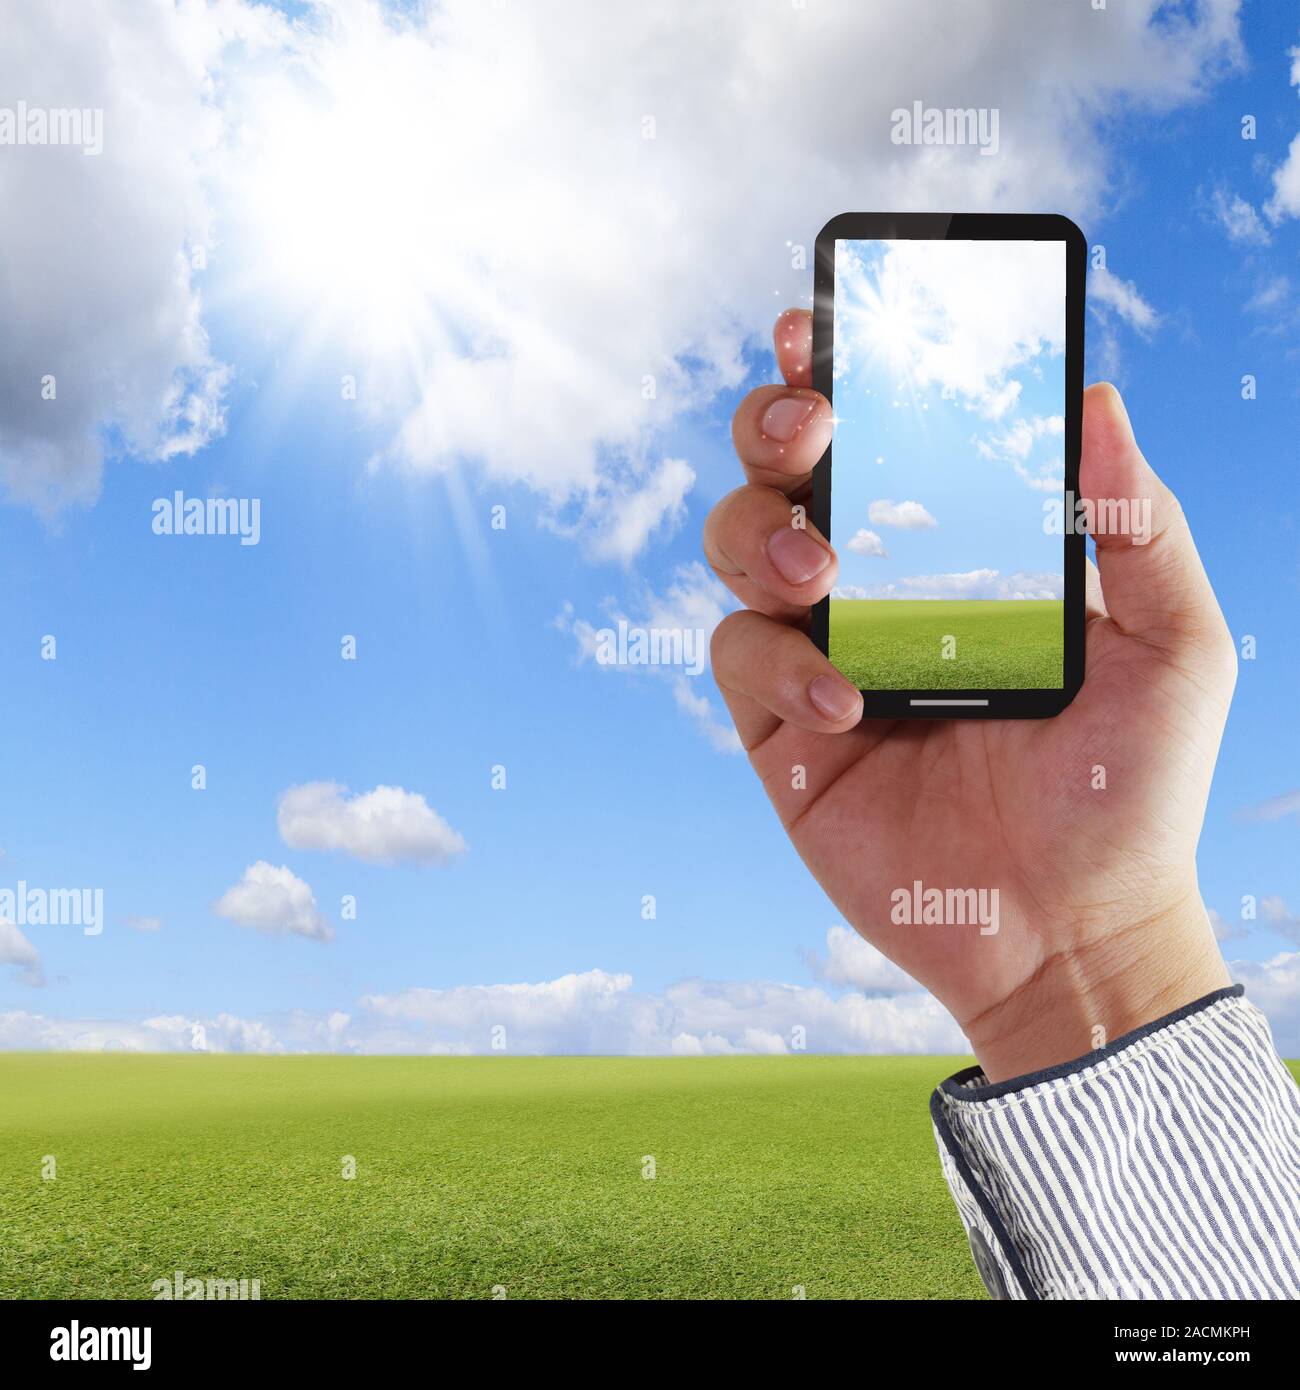 Teléfono móvil de pantalla táctil Foto de stock